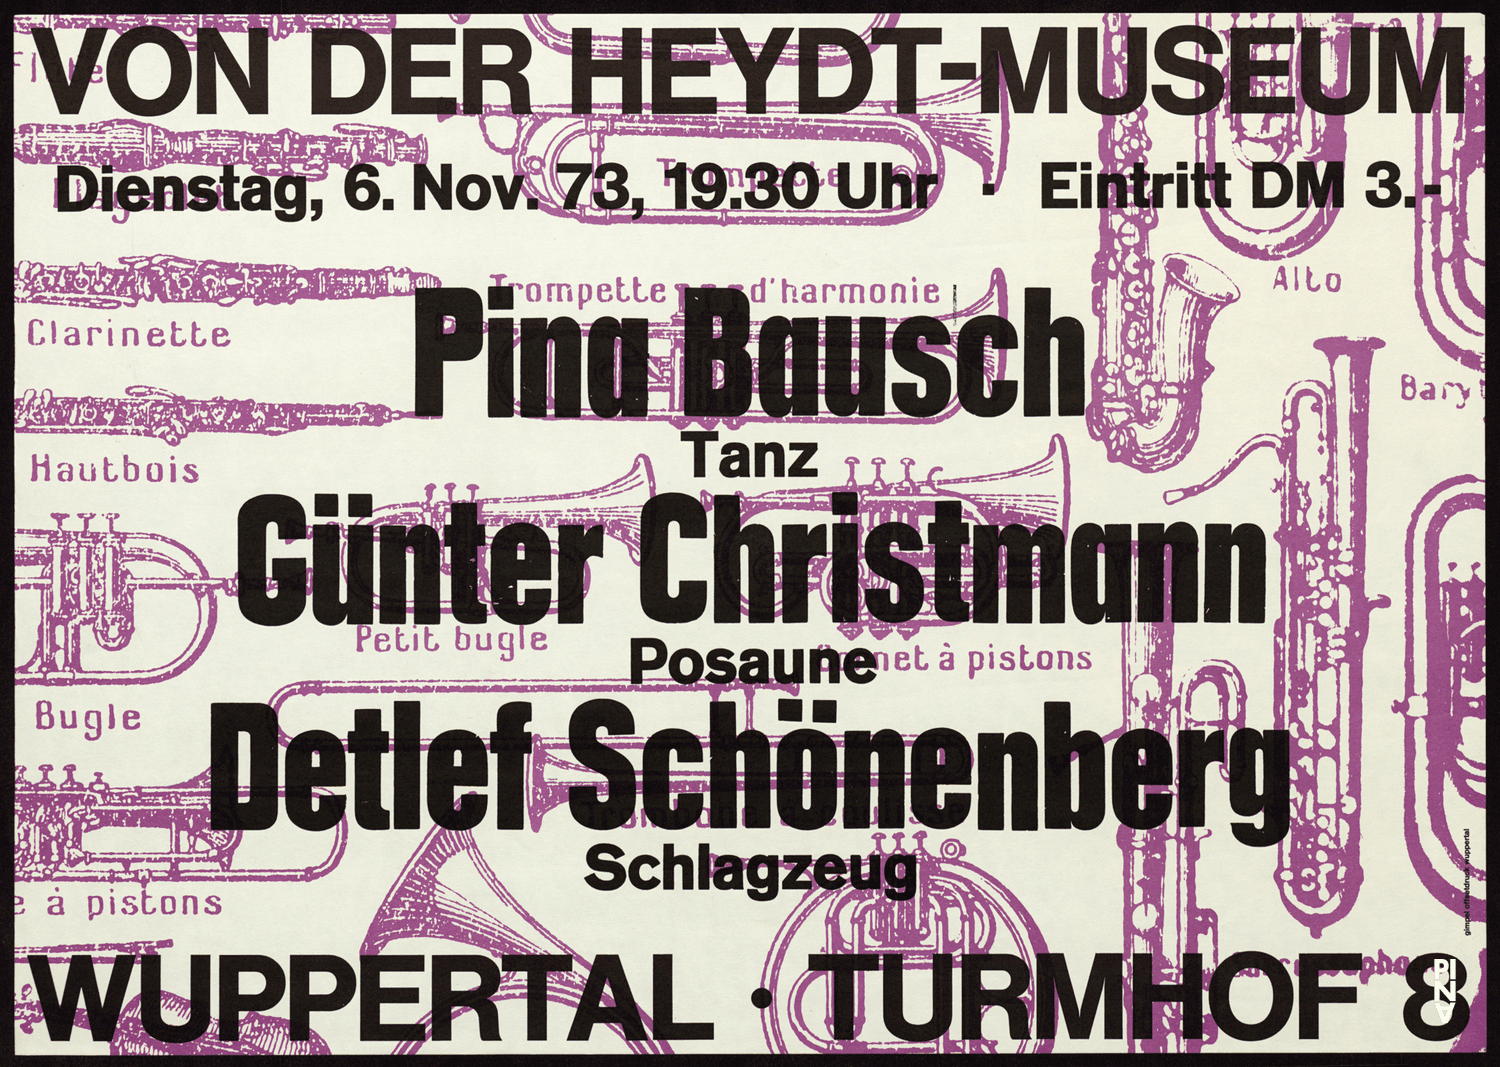 Poster for “Jazz Improvisation mit dem Schönerberg-Duo” by Pina Bausch, Günter Christmann and Detlef Schönenberg in Wuppertal, Nov. 6, 1973